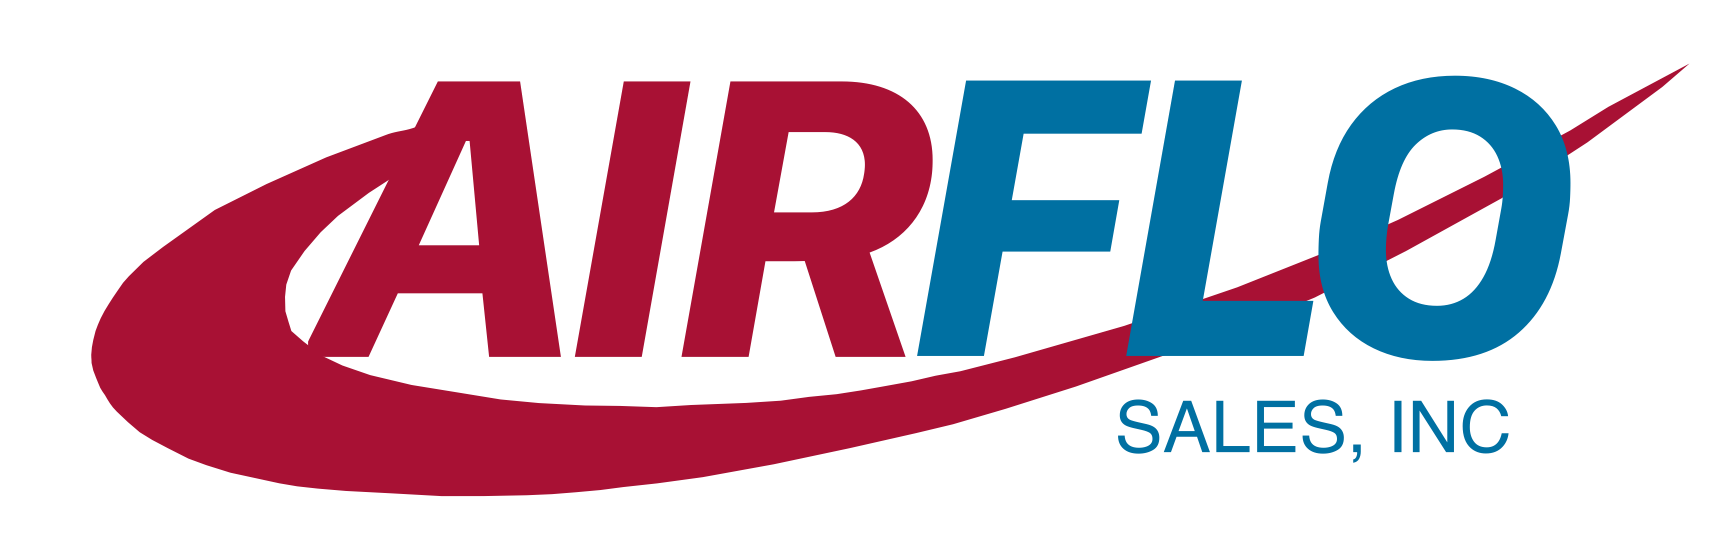 Air Flo Sale, Inc logo